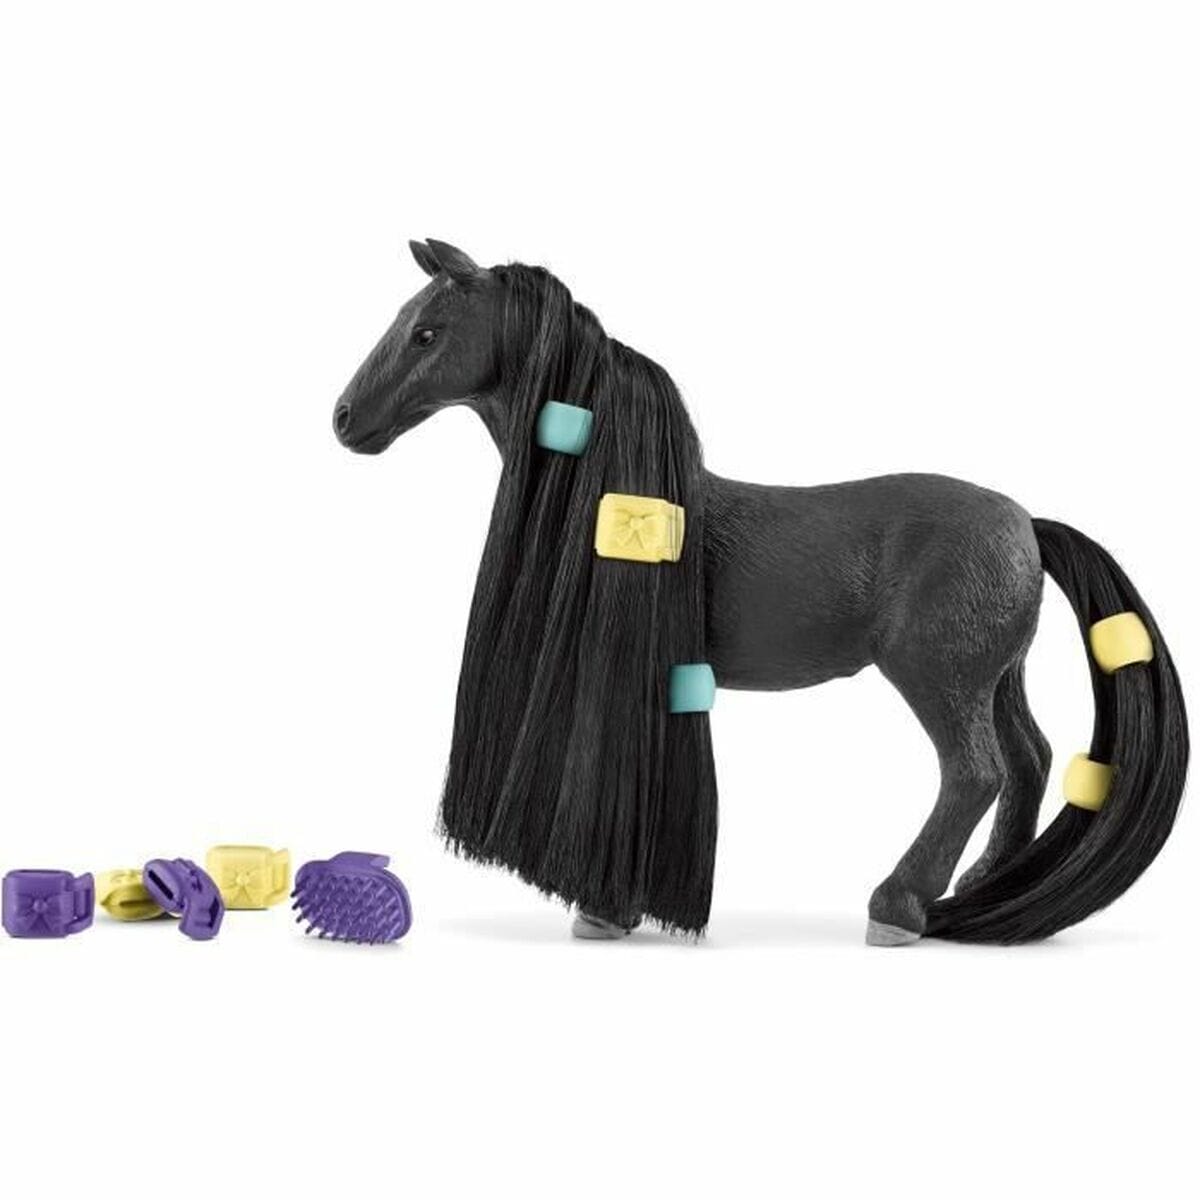 Schleich Spielzeug | Kostüme > Spielzeug und Spiele > Spiel-Tiere Pferd Schleich Beauty Horse Criollo Definitivo Mare Kunststoff